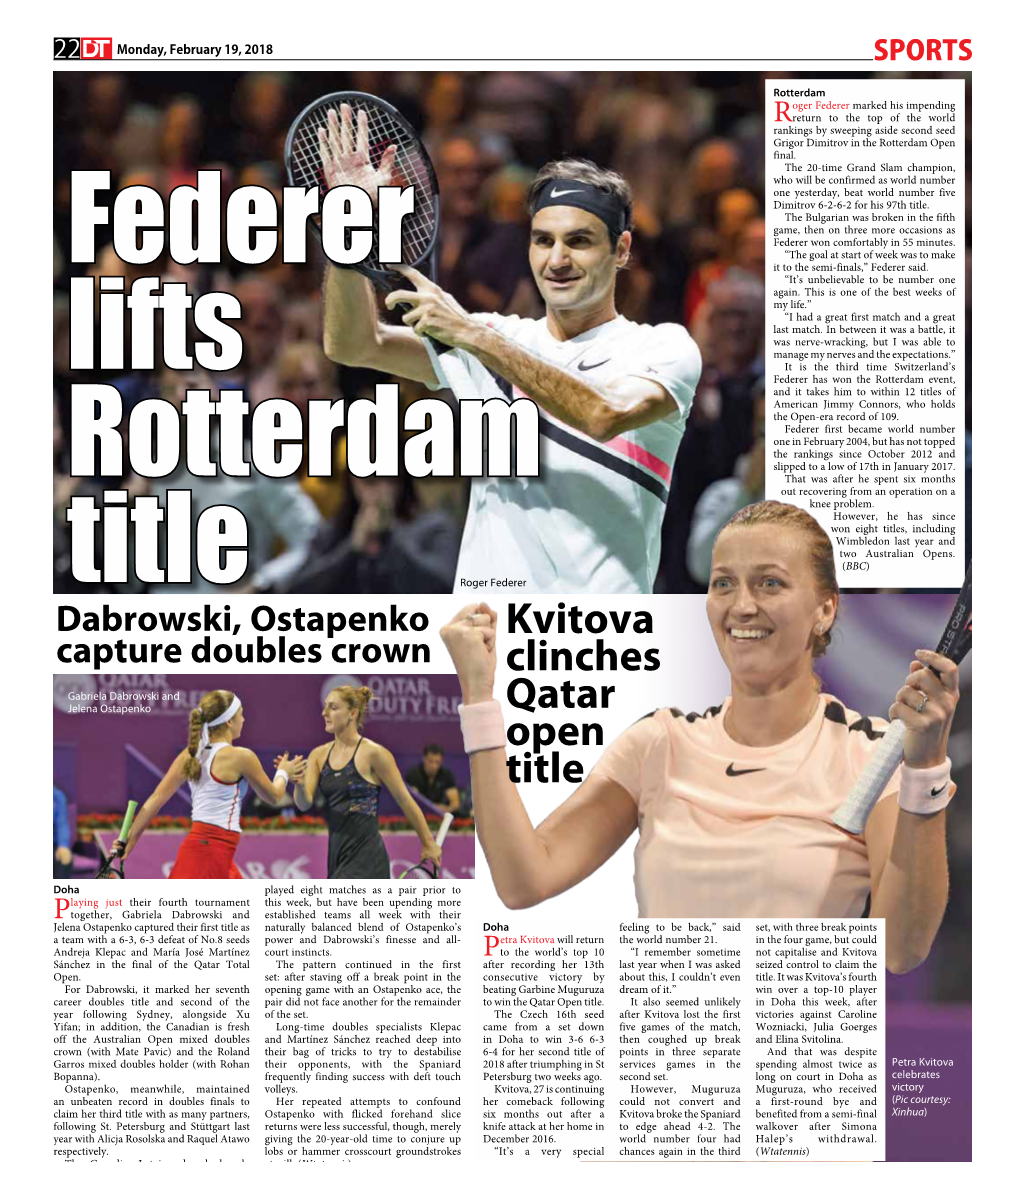 Kvitova Clinches Qatar Open Title